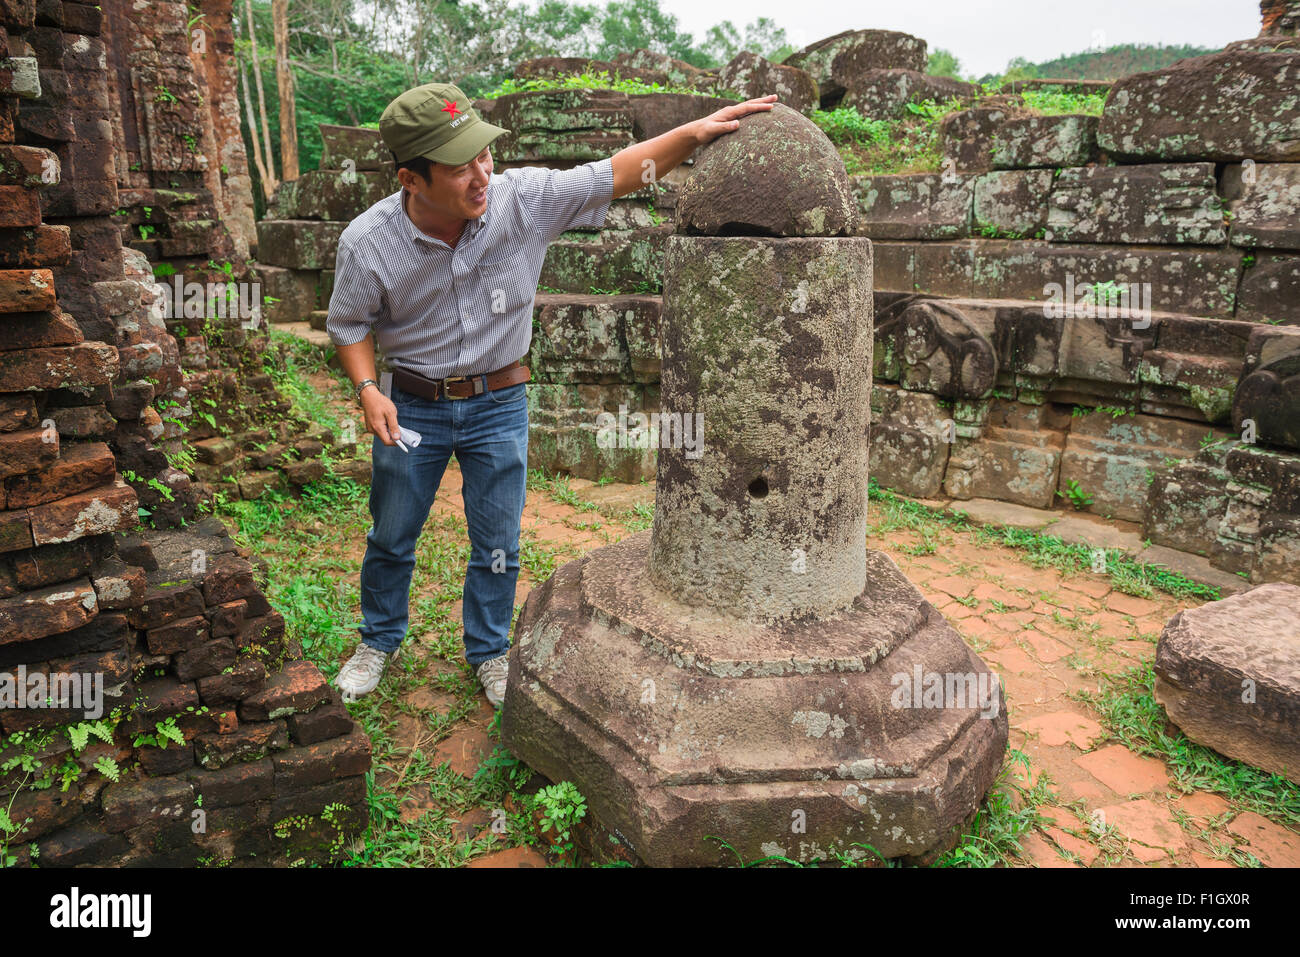 Mon fils, un guide touristique du Vietnam se trouve à côté d'un lingam en pierre à l'intérieur des ruines du temple Cham de My Son, Vietnam central. Banque D'Images